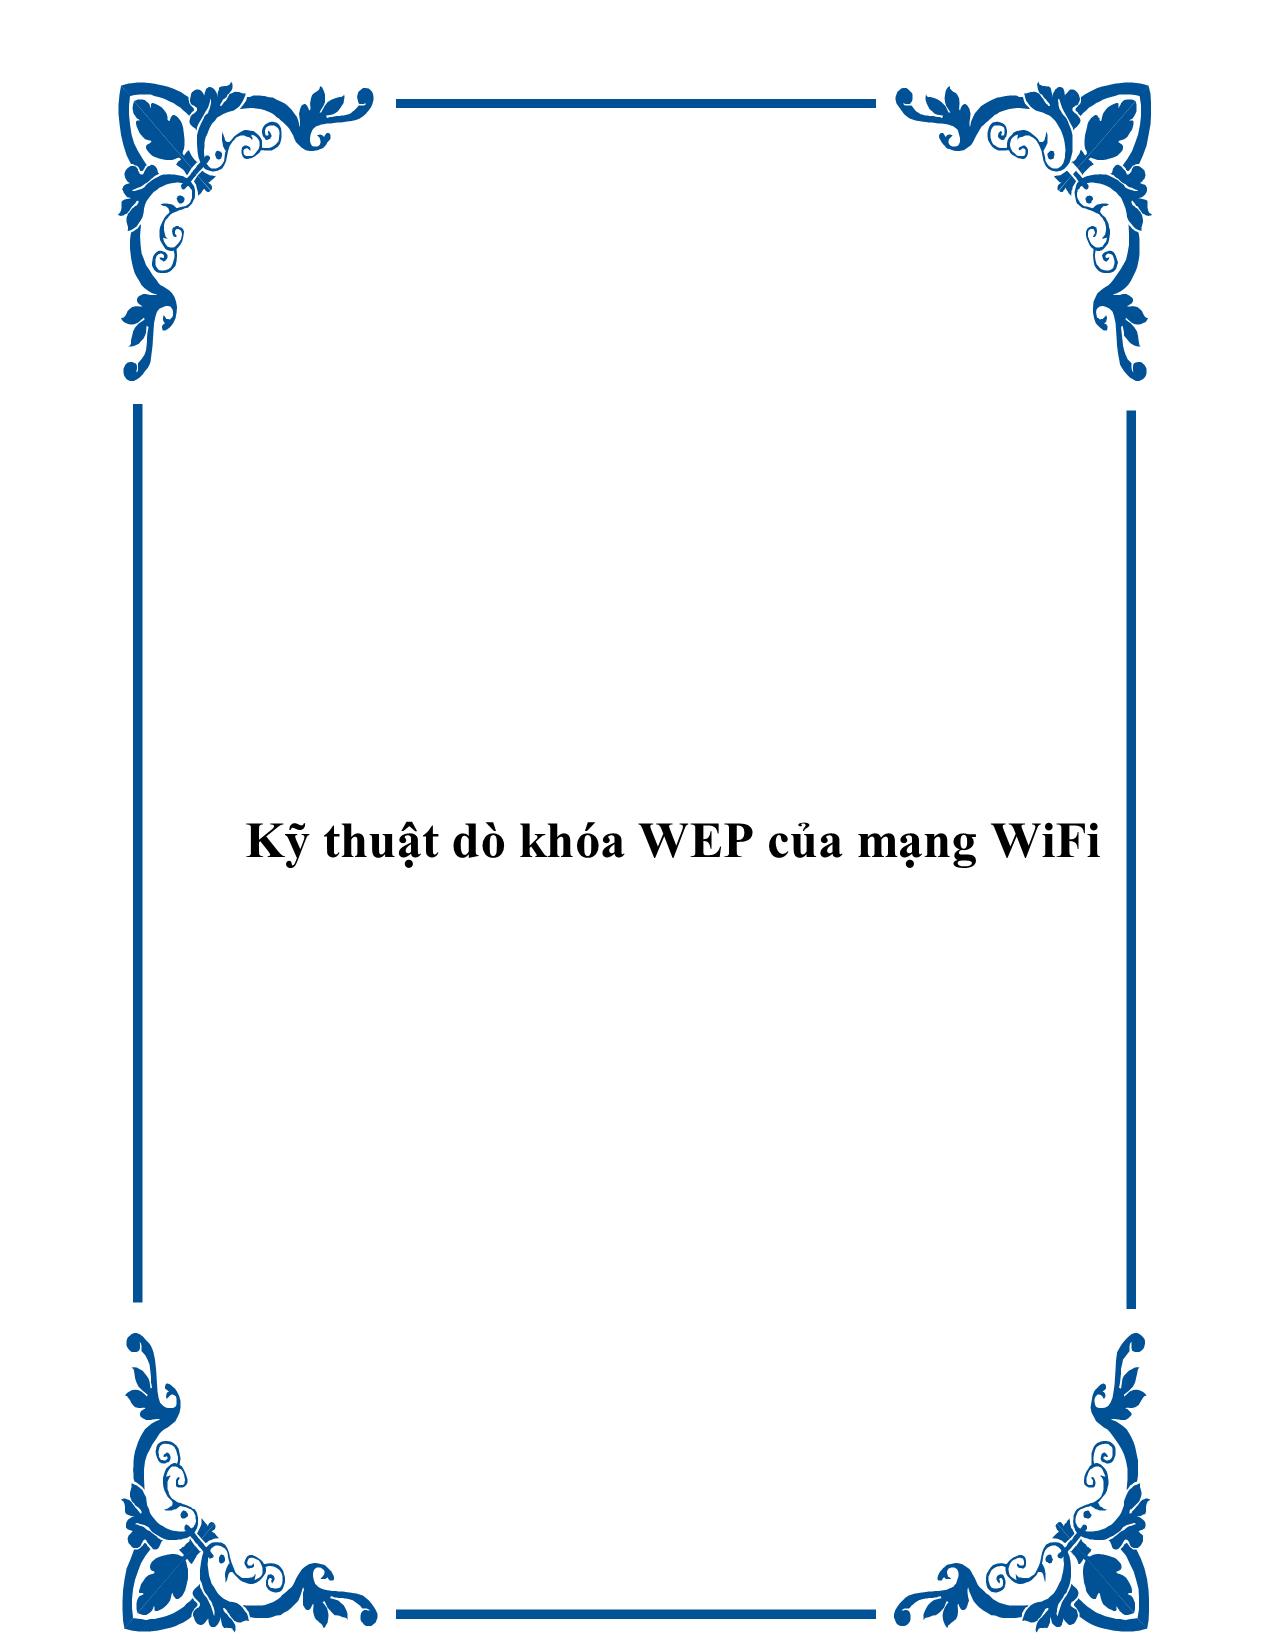 Kỹ thuật dò khóa WEP của mạng WiFi step by step trang 1